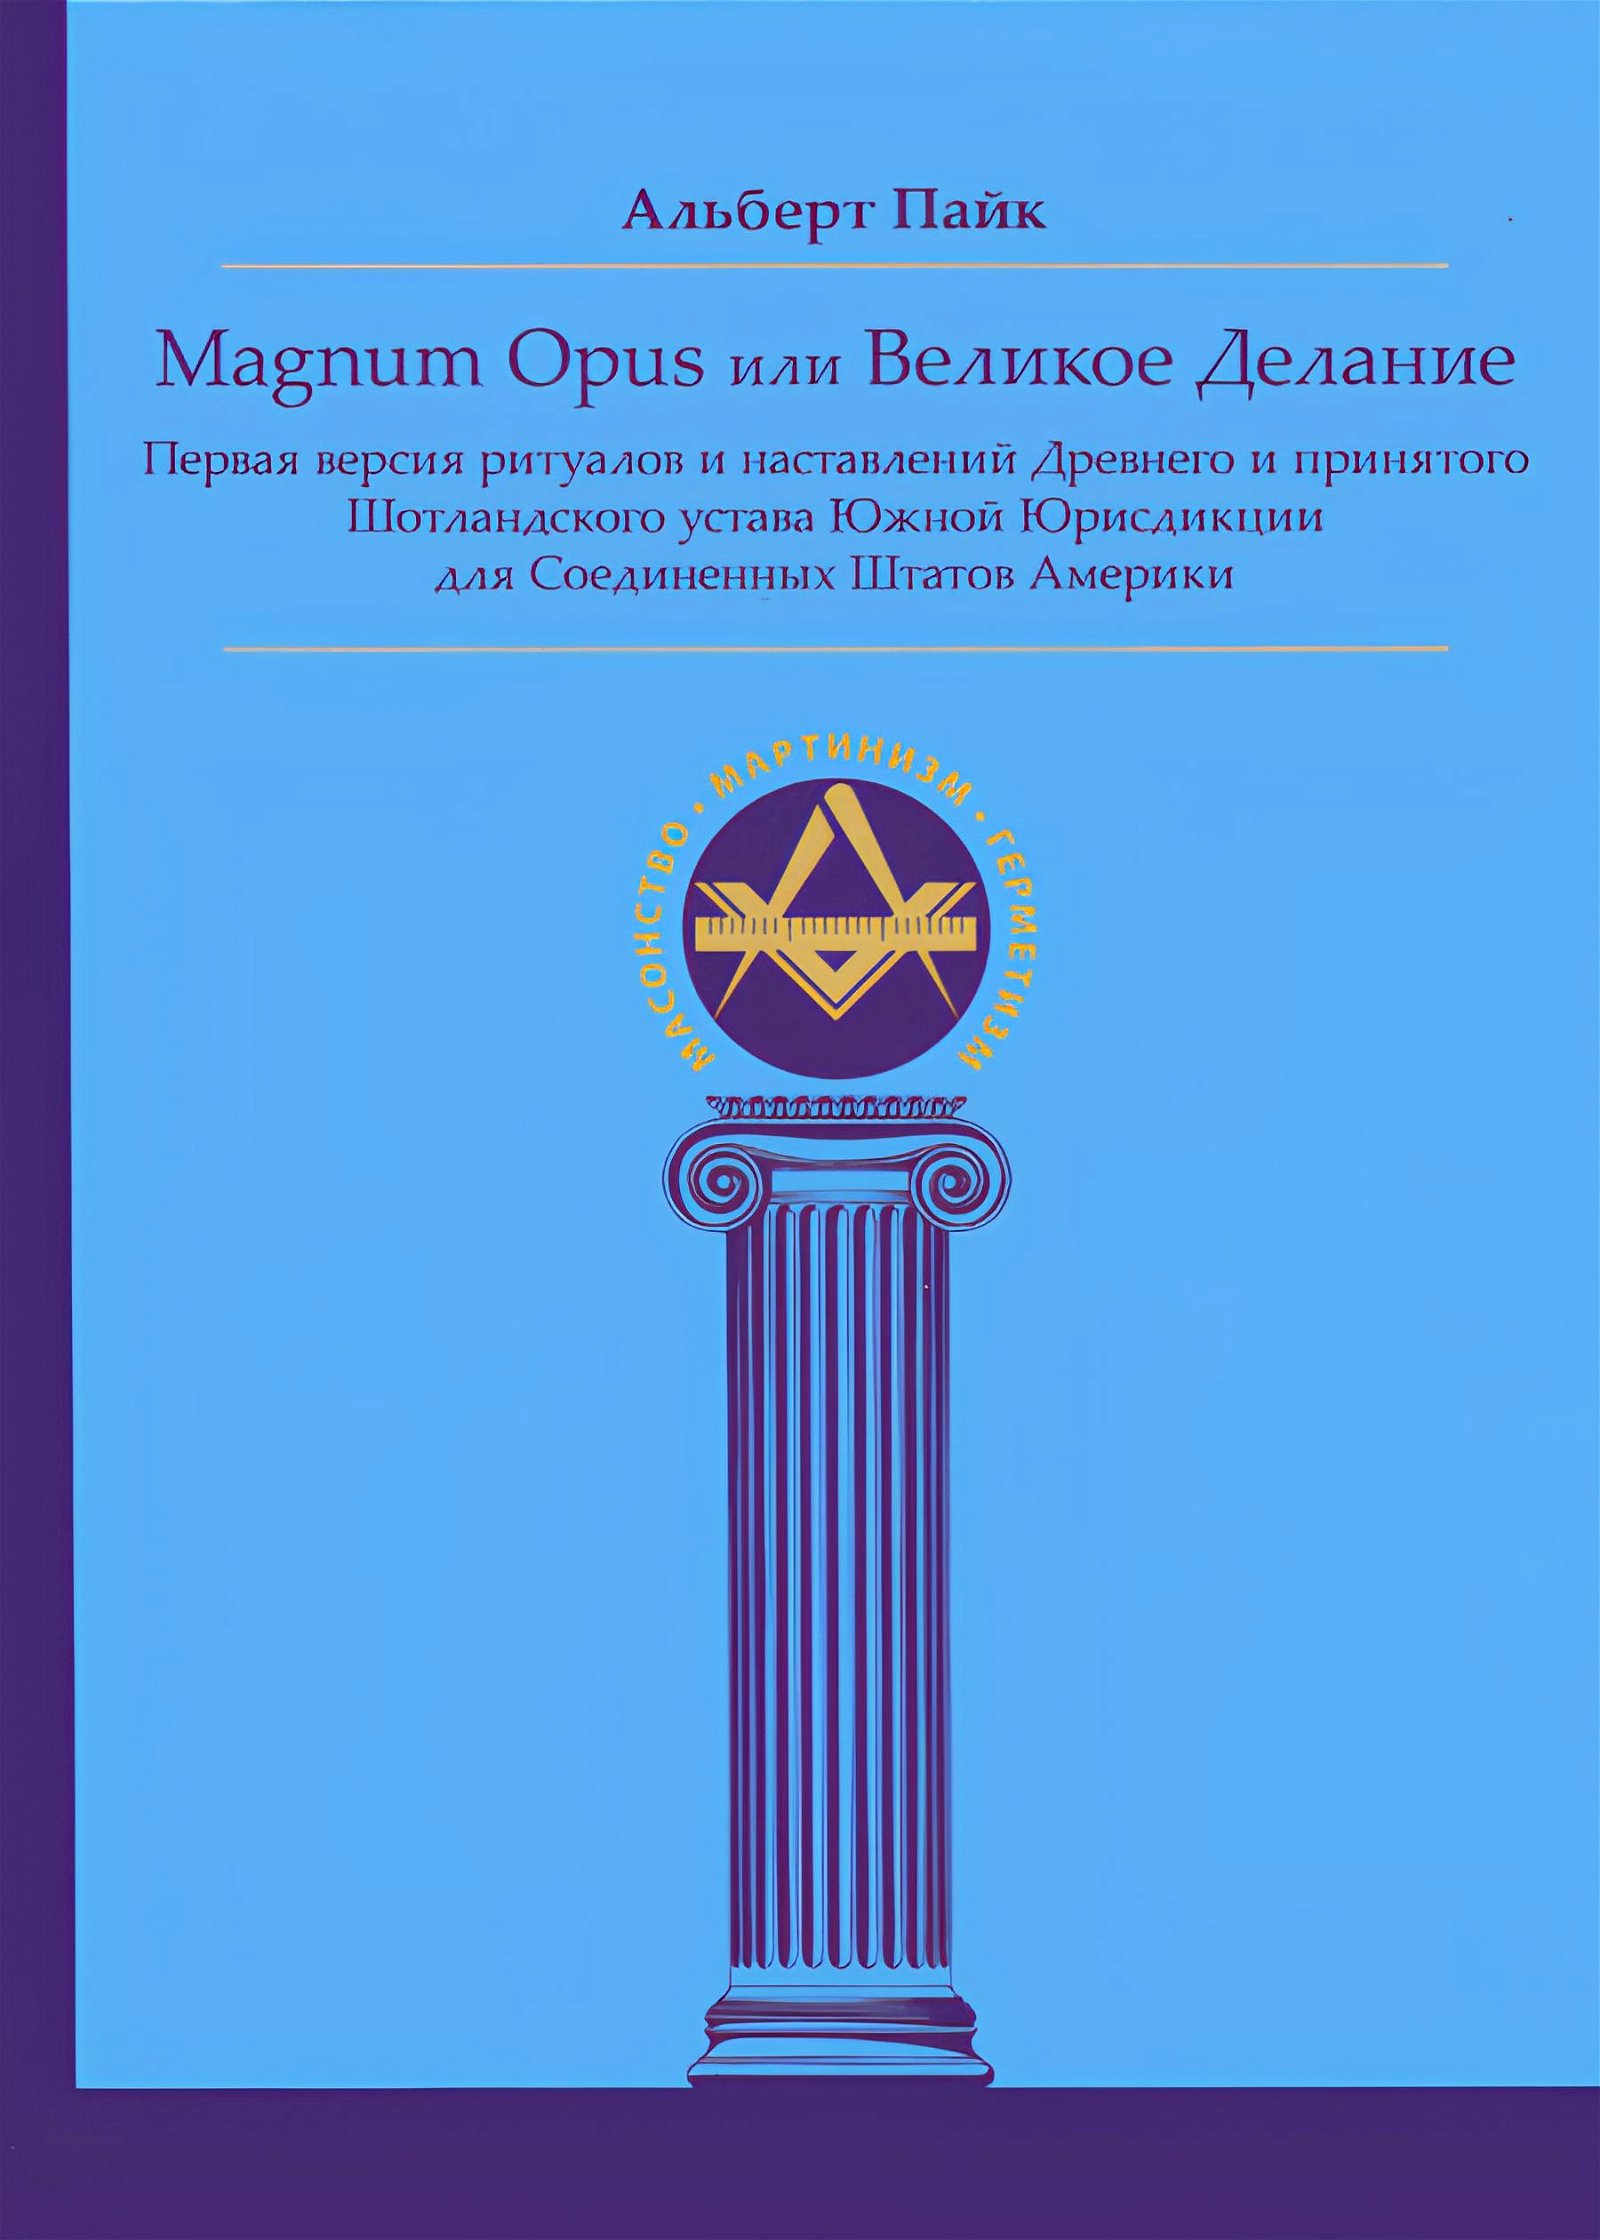 Magnum Opus или Великое Делание. Первая версия ритуалов и наставлений Древнего и принятого Шотландского устава Южной Юрисдикции для Соединенных Штатов Америки. 